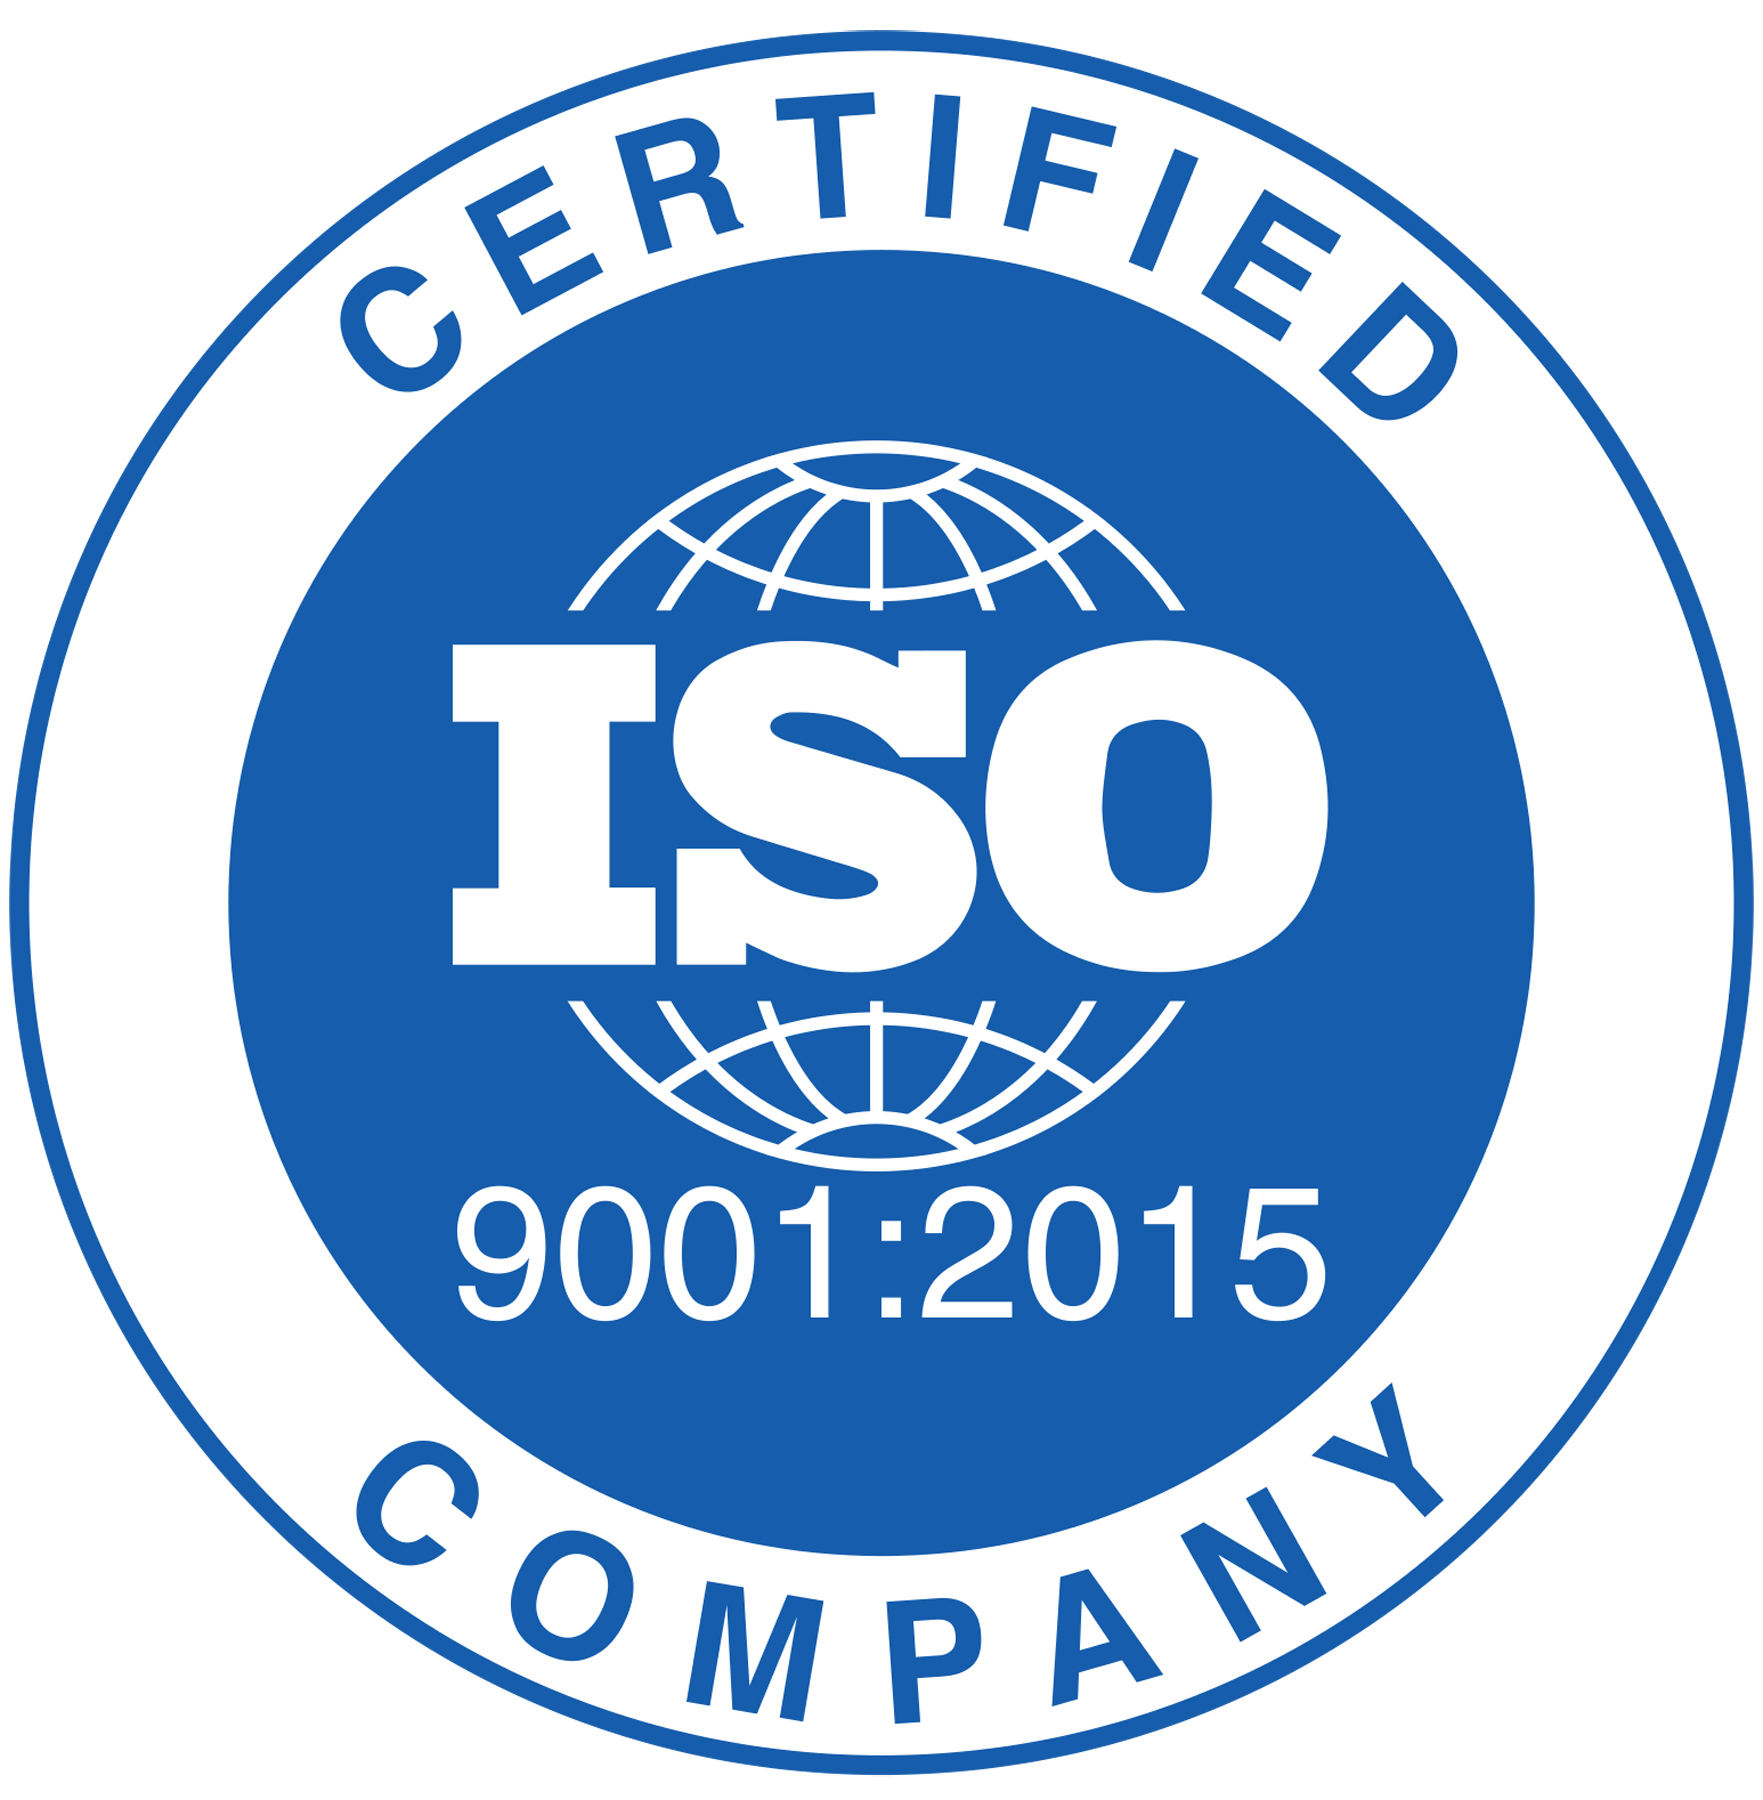  Tiêu chuẩn ISO 9001:2015 là gì?